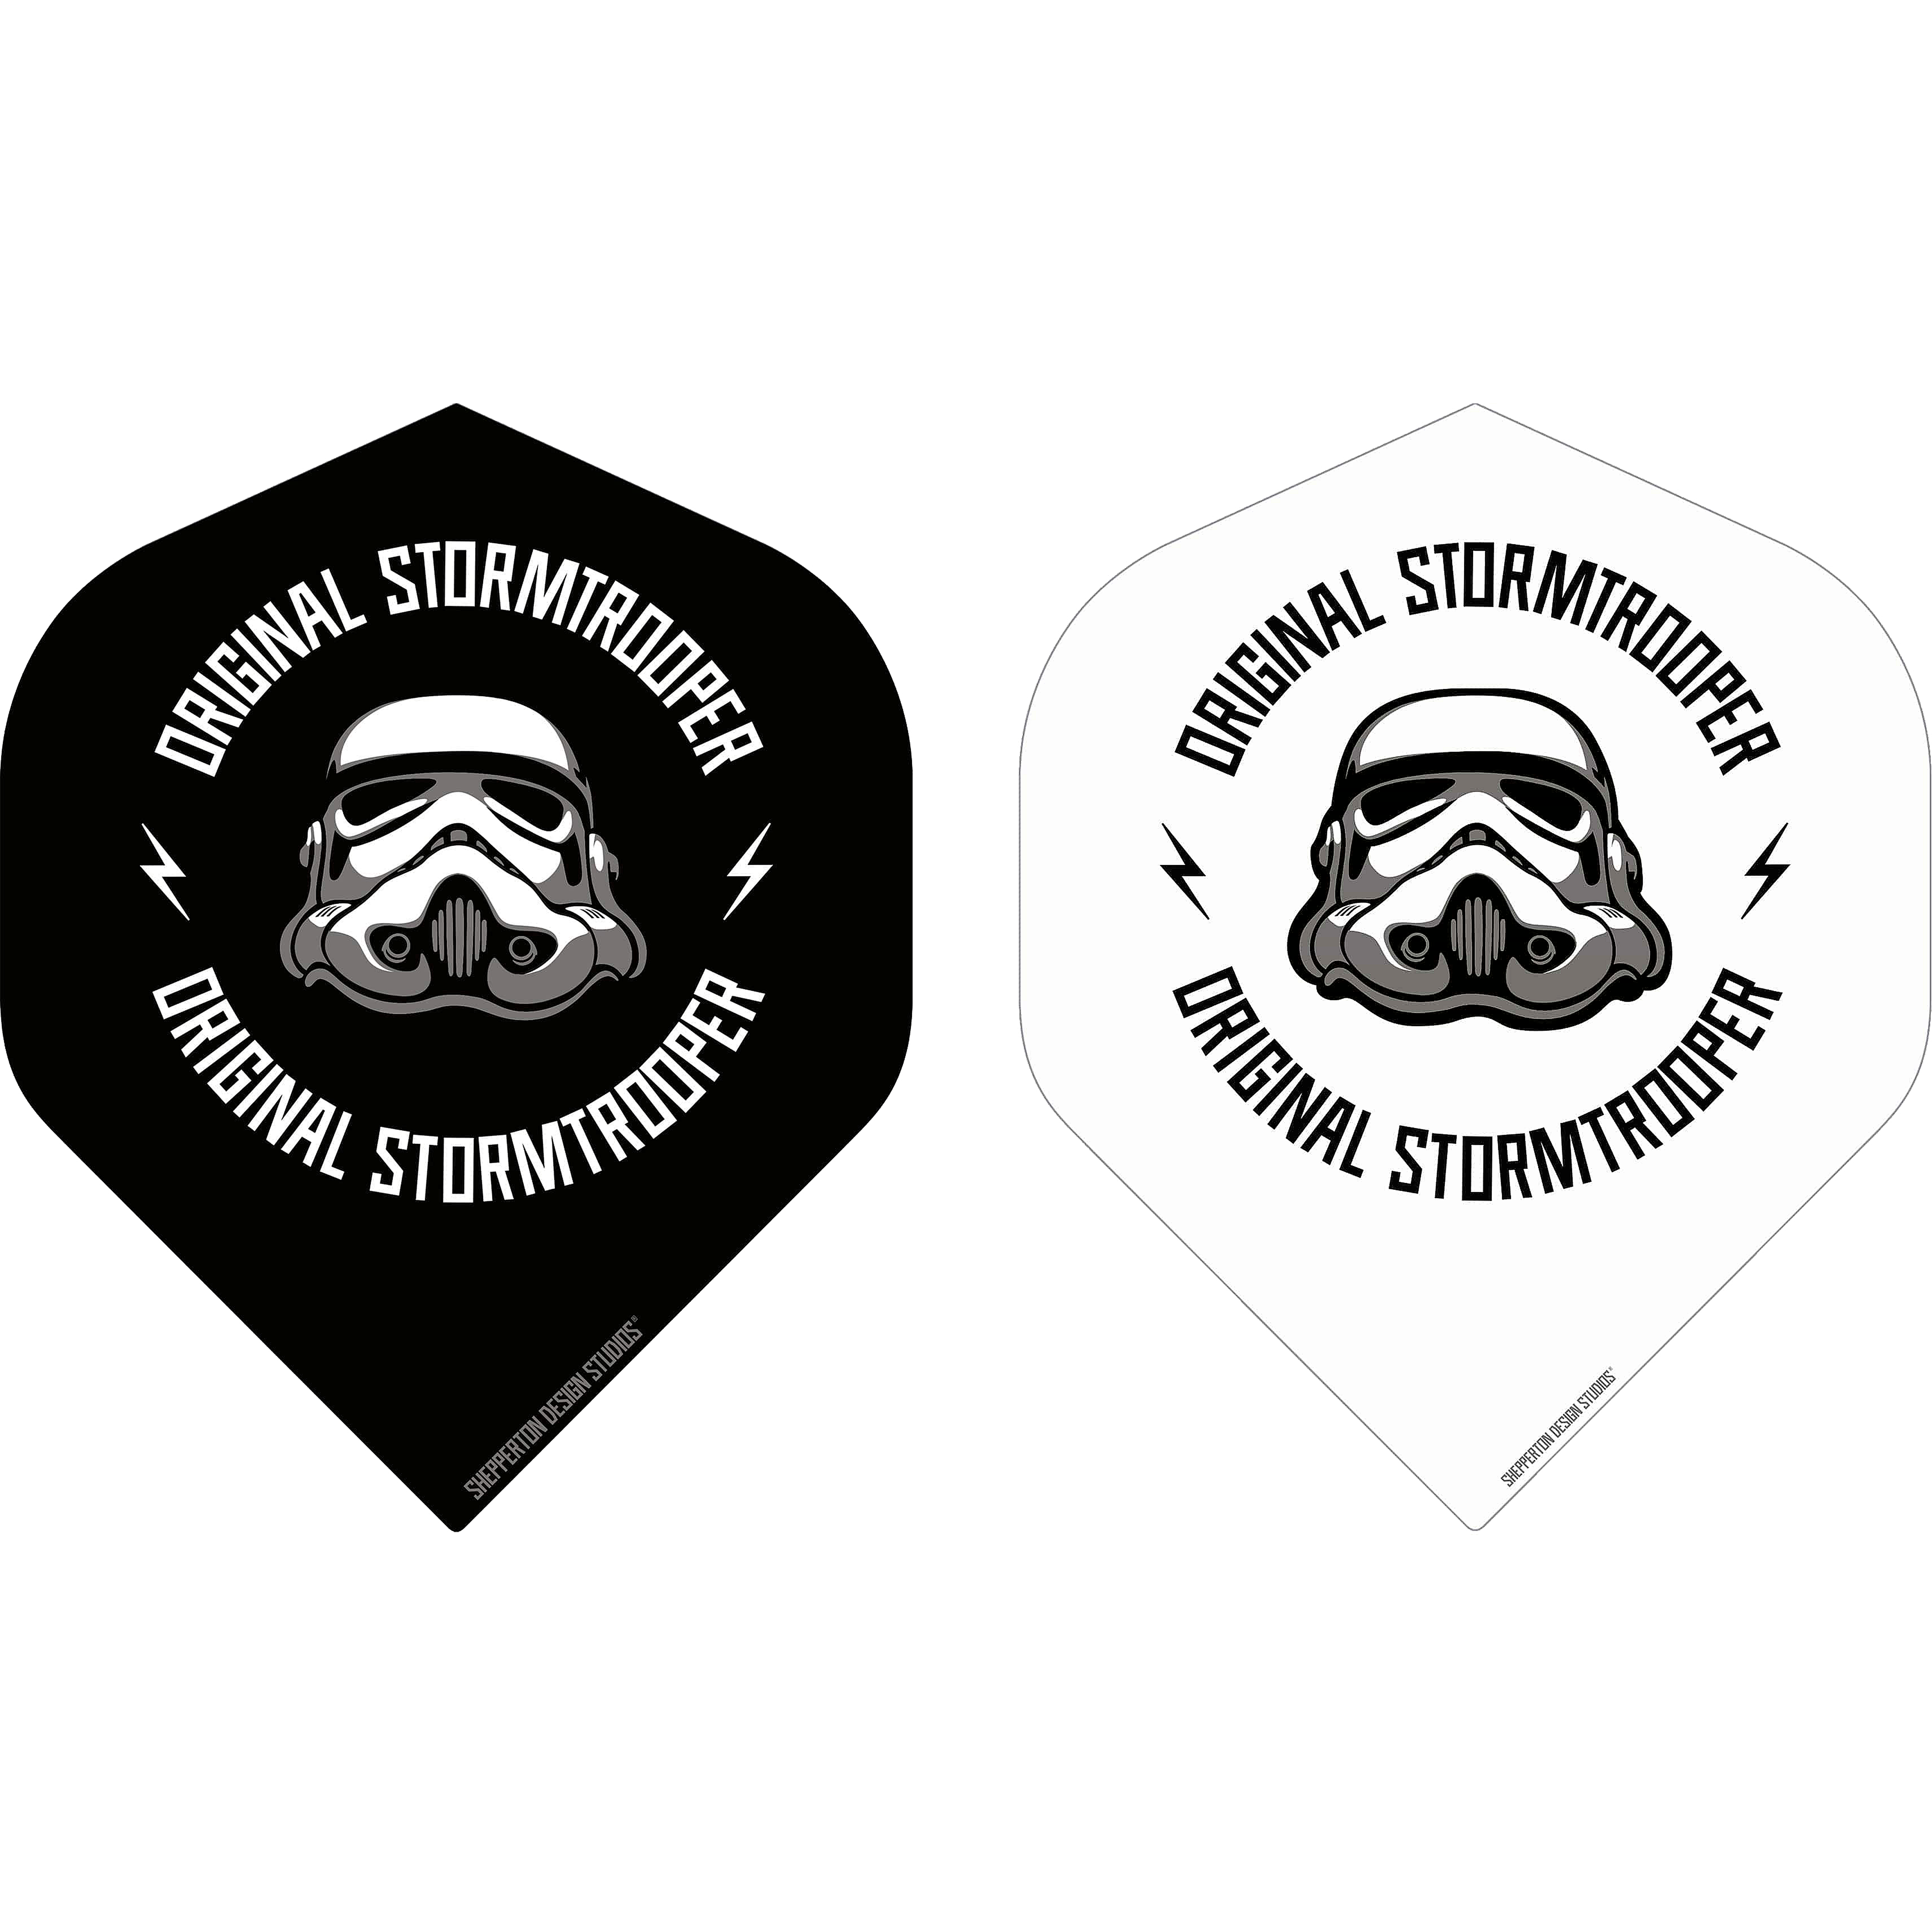 DartSturm.de - Storm Trooper Logo - Standard